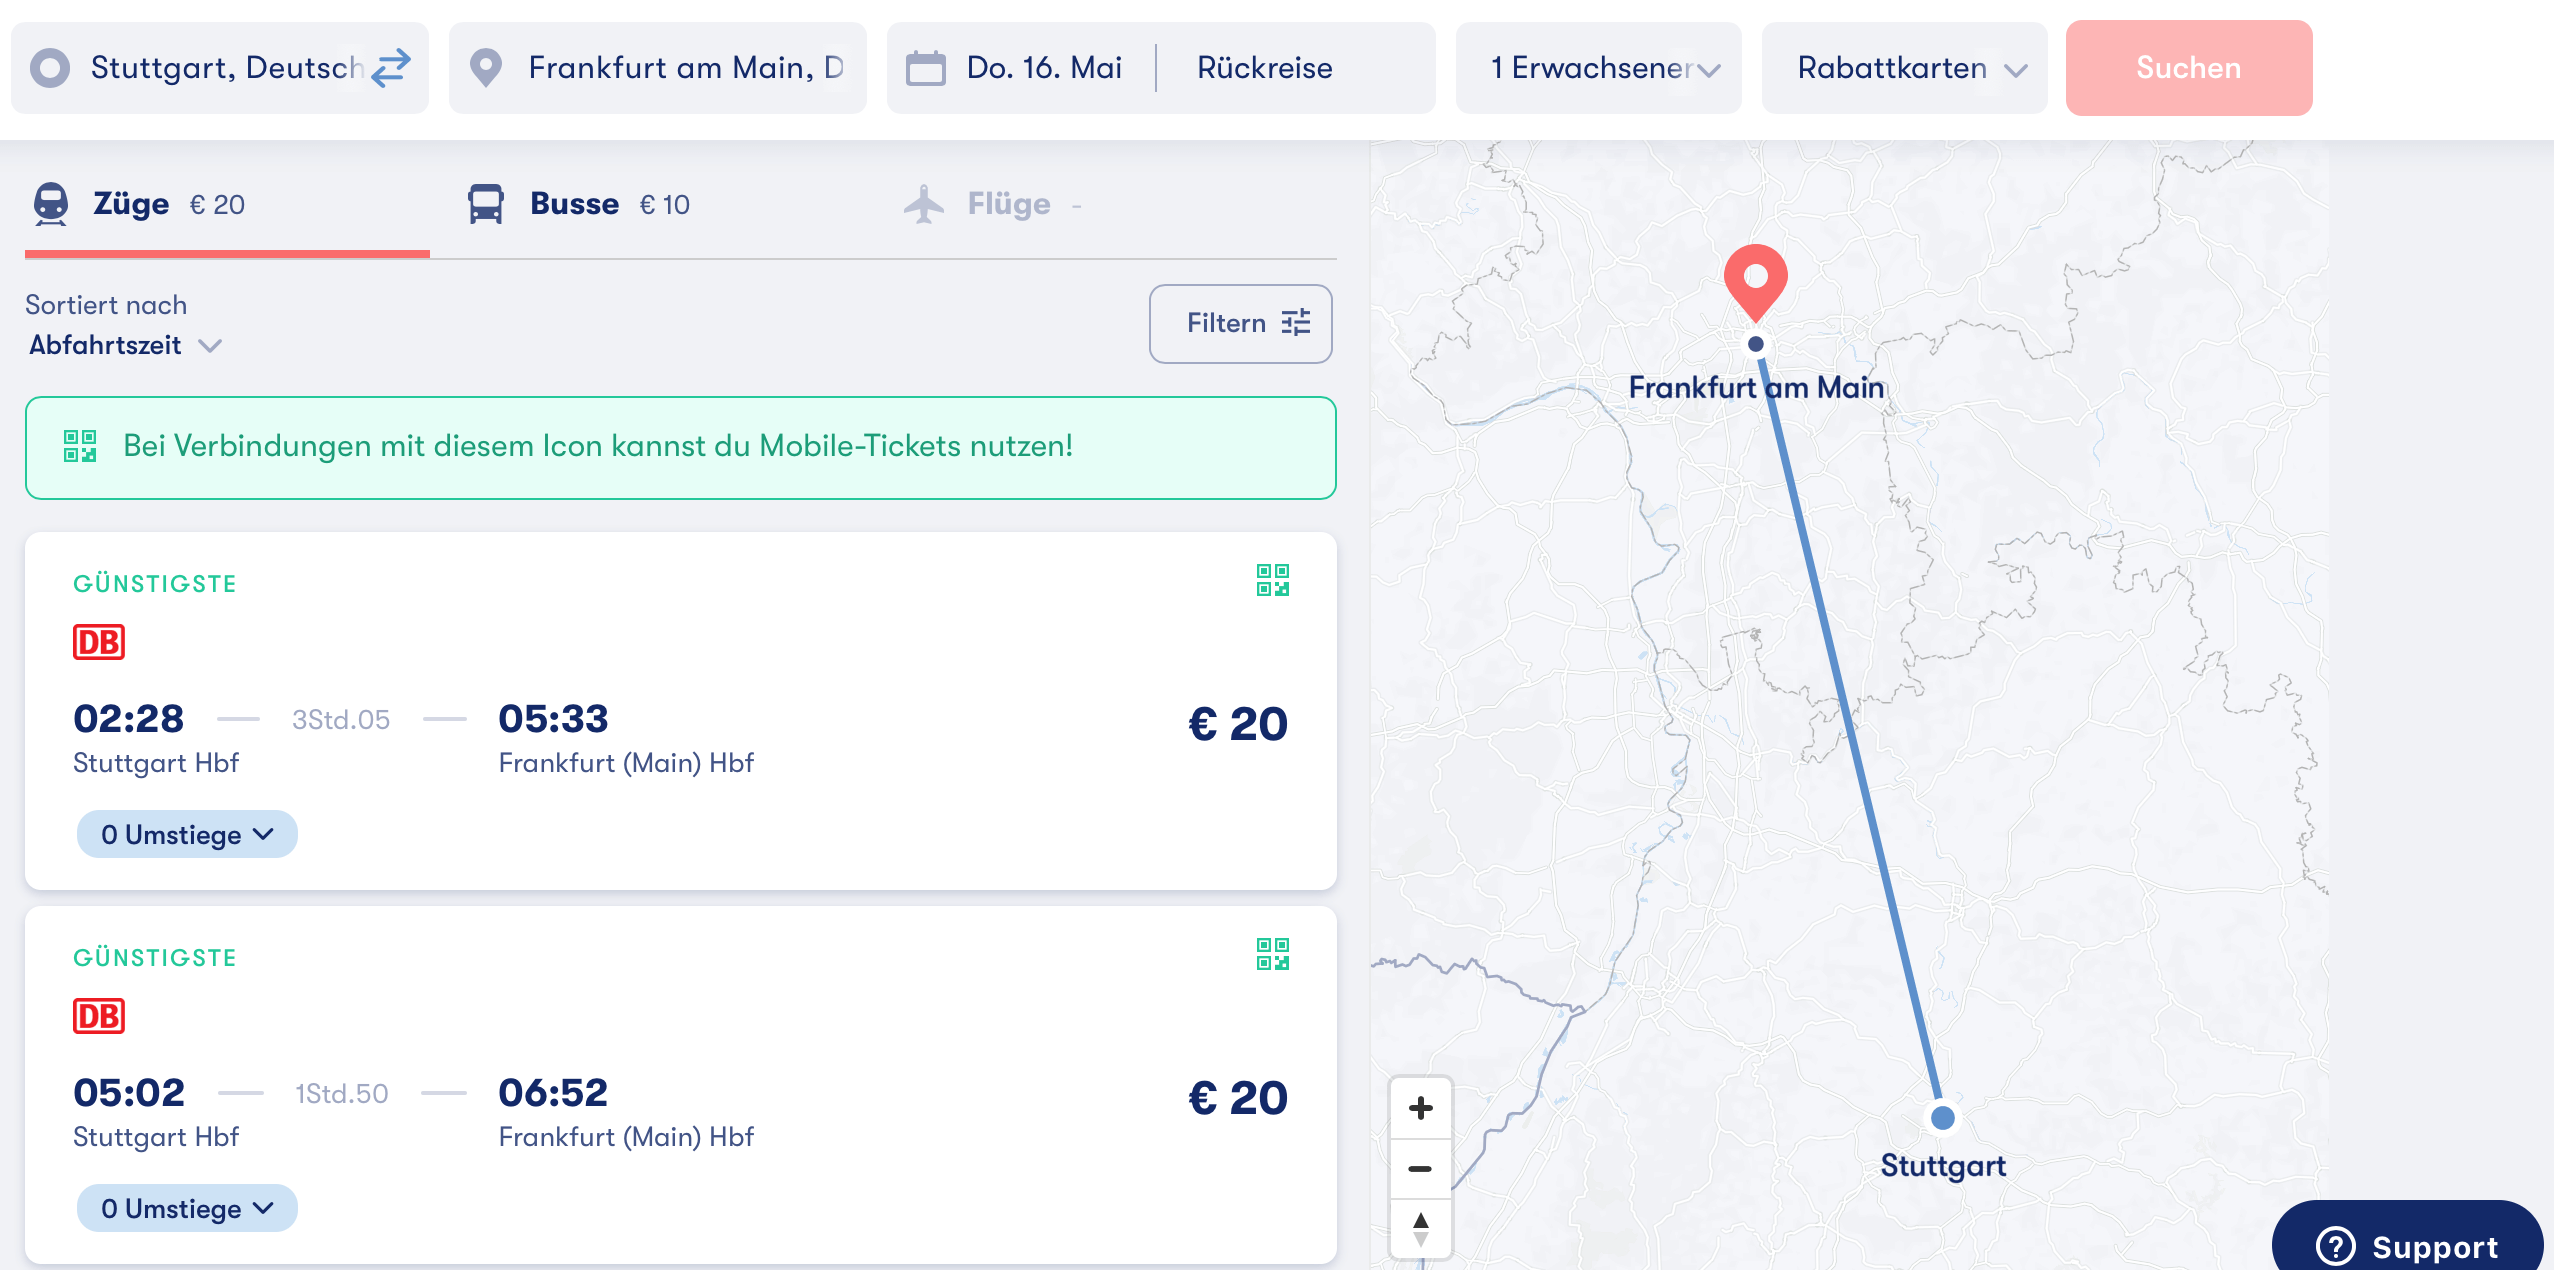 GoEuro.de Stgt Frankfurt ICE 20€